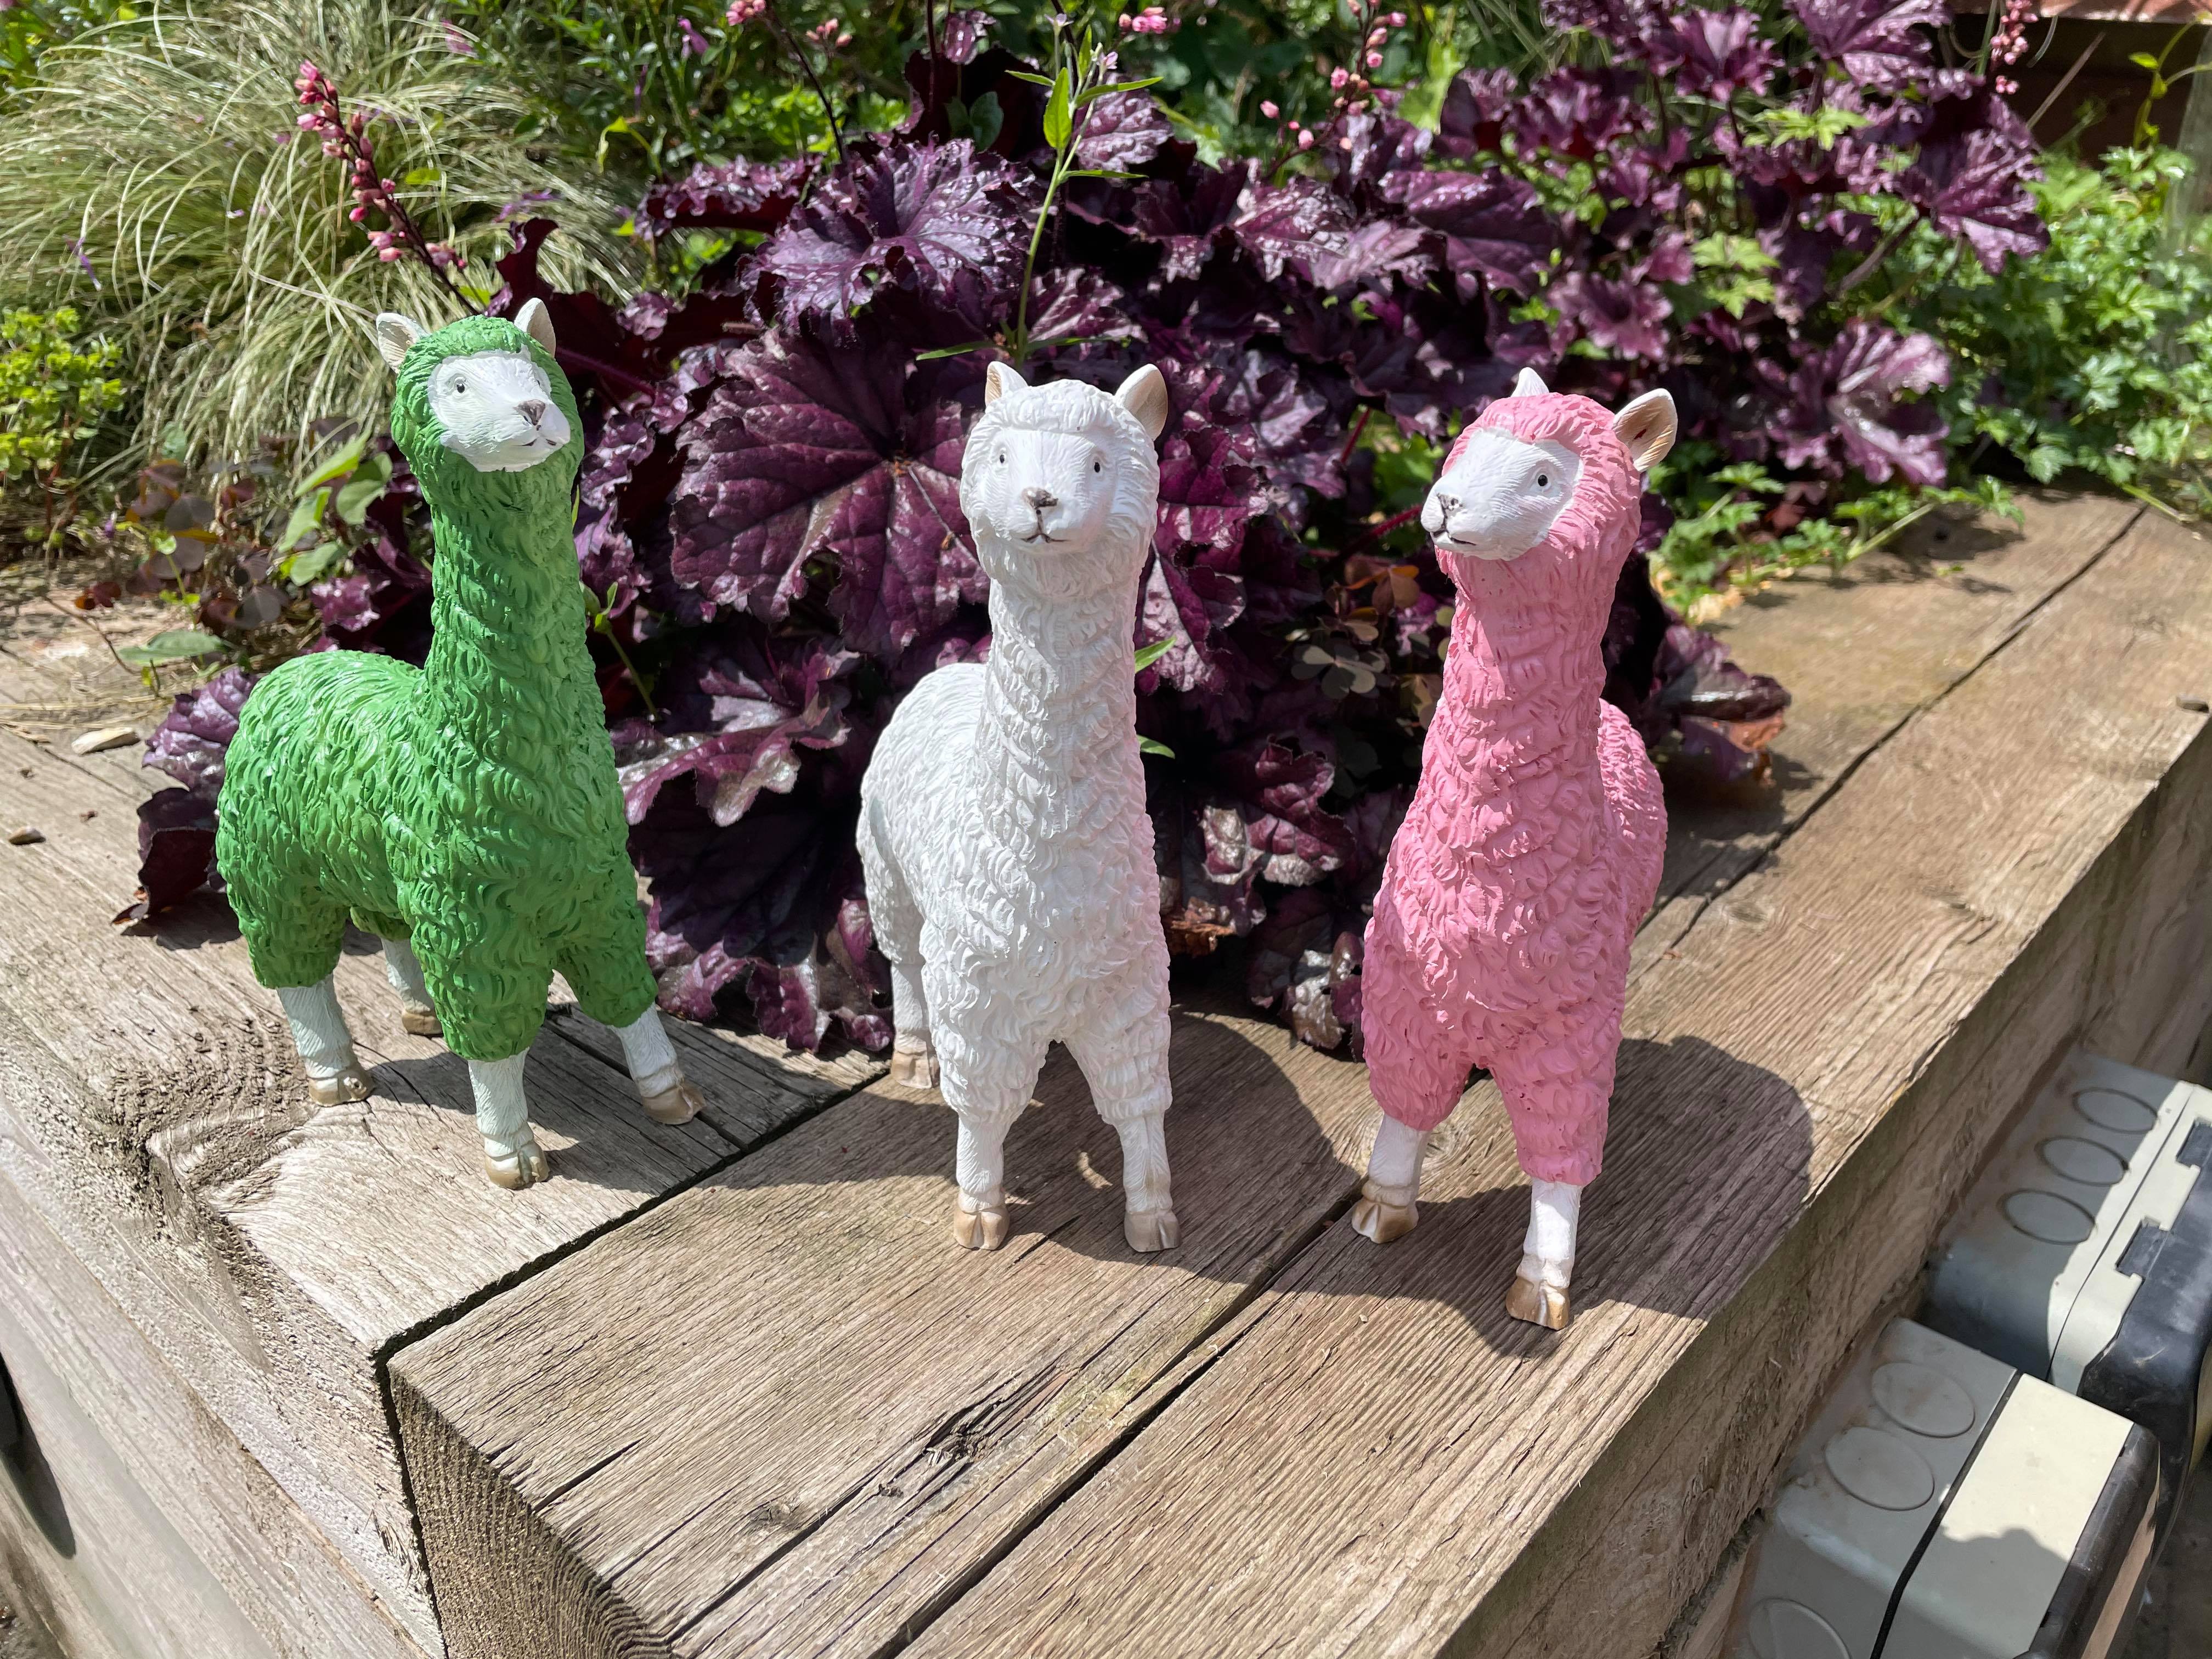 Three Funky Llamas